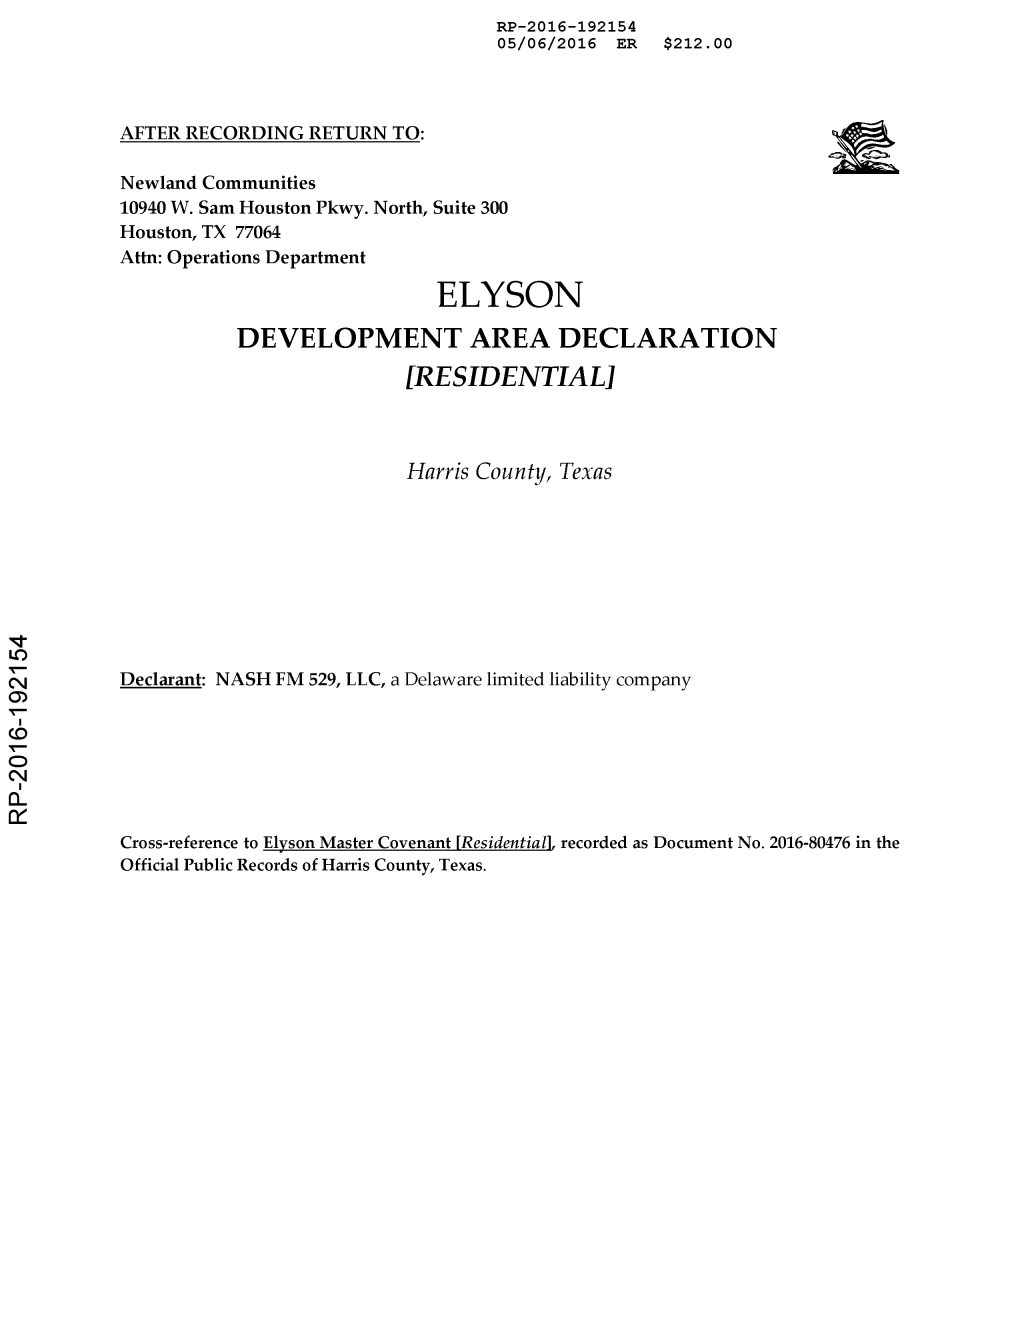 Development Area Declaration.Pdf